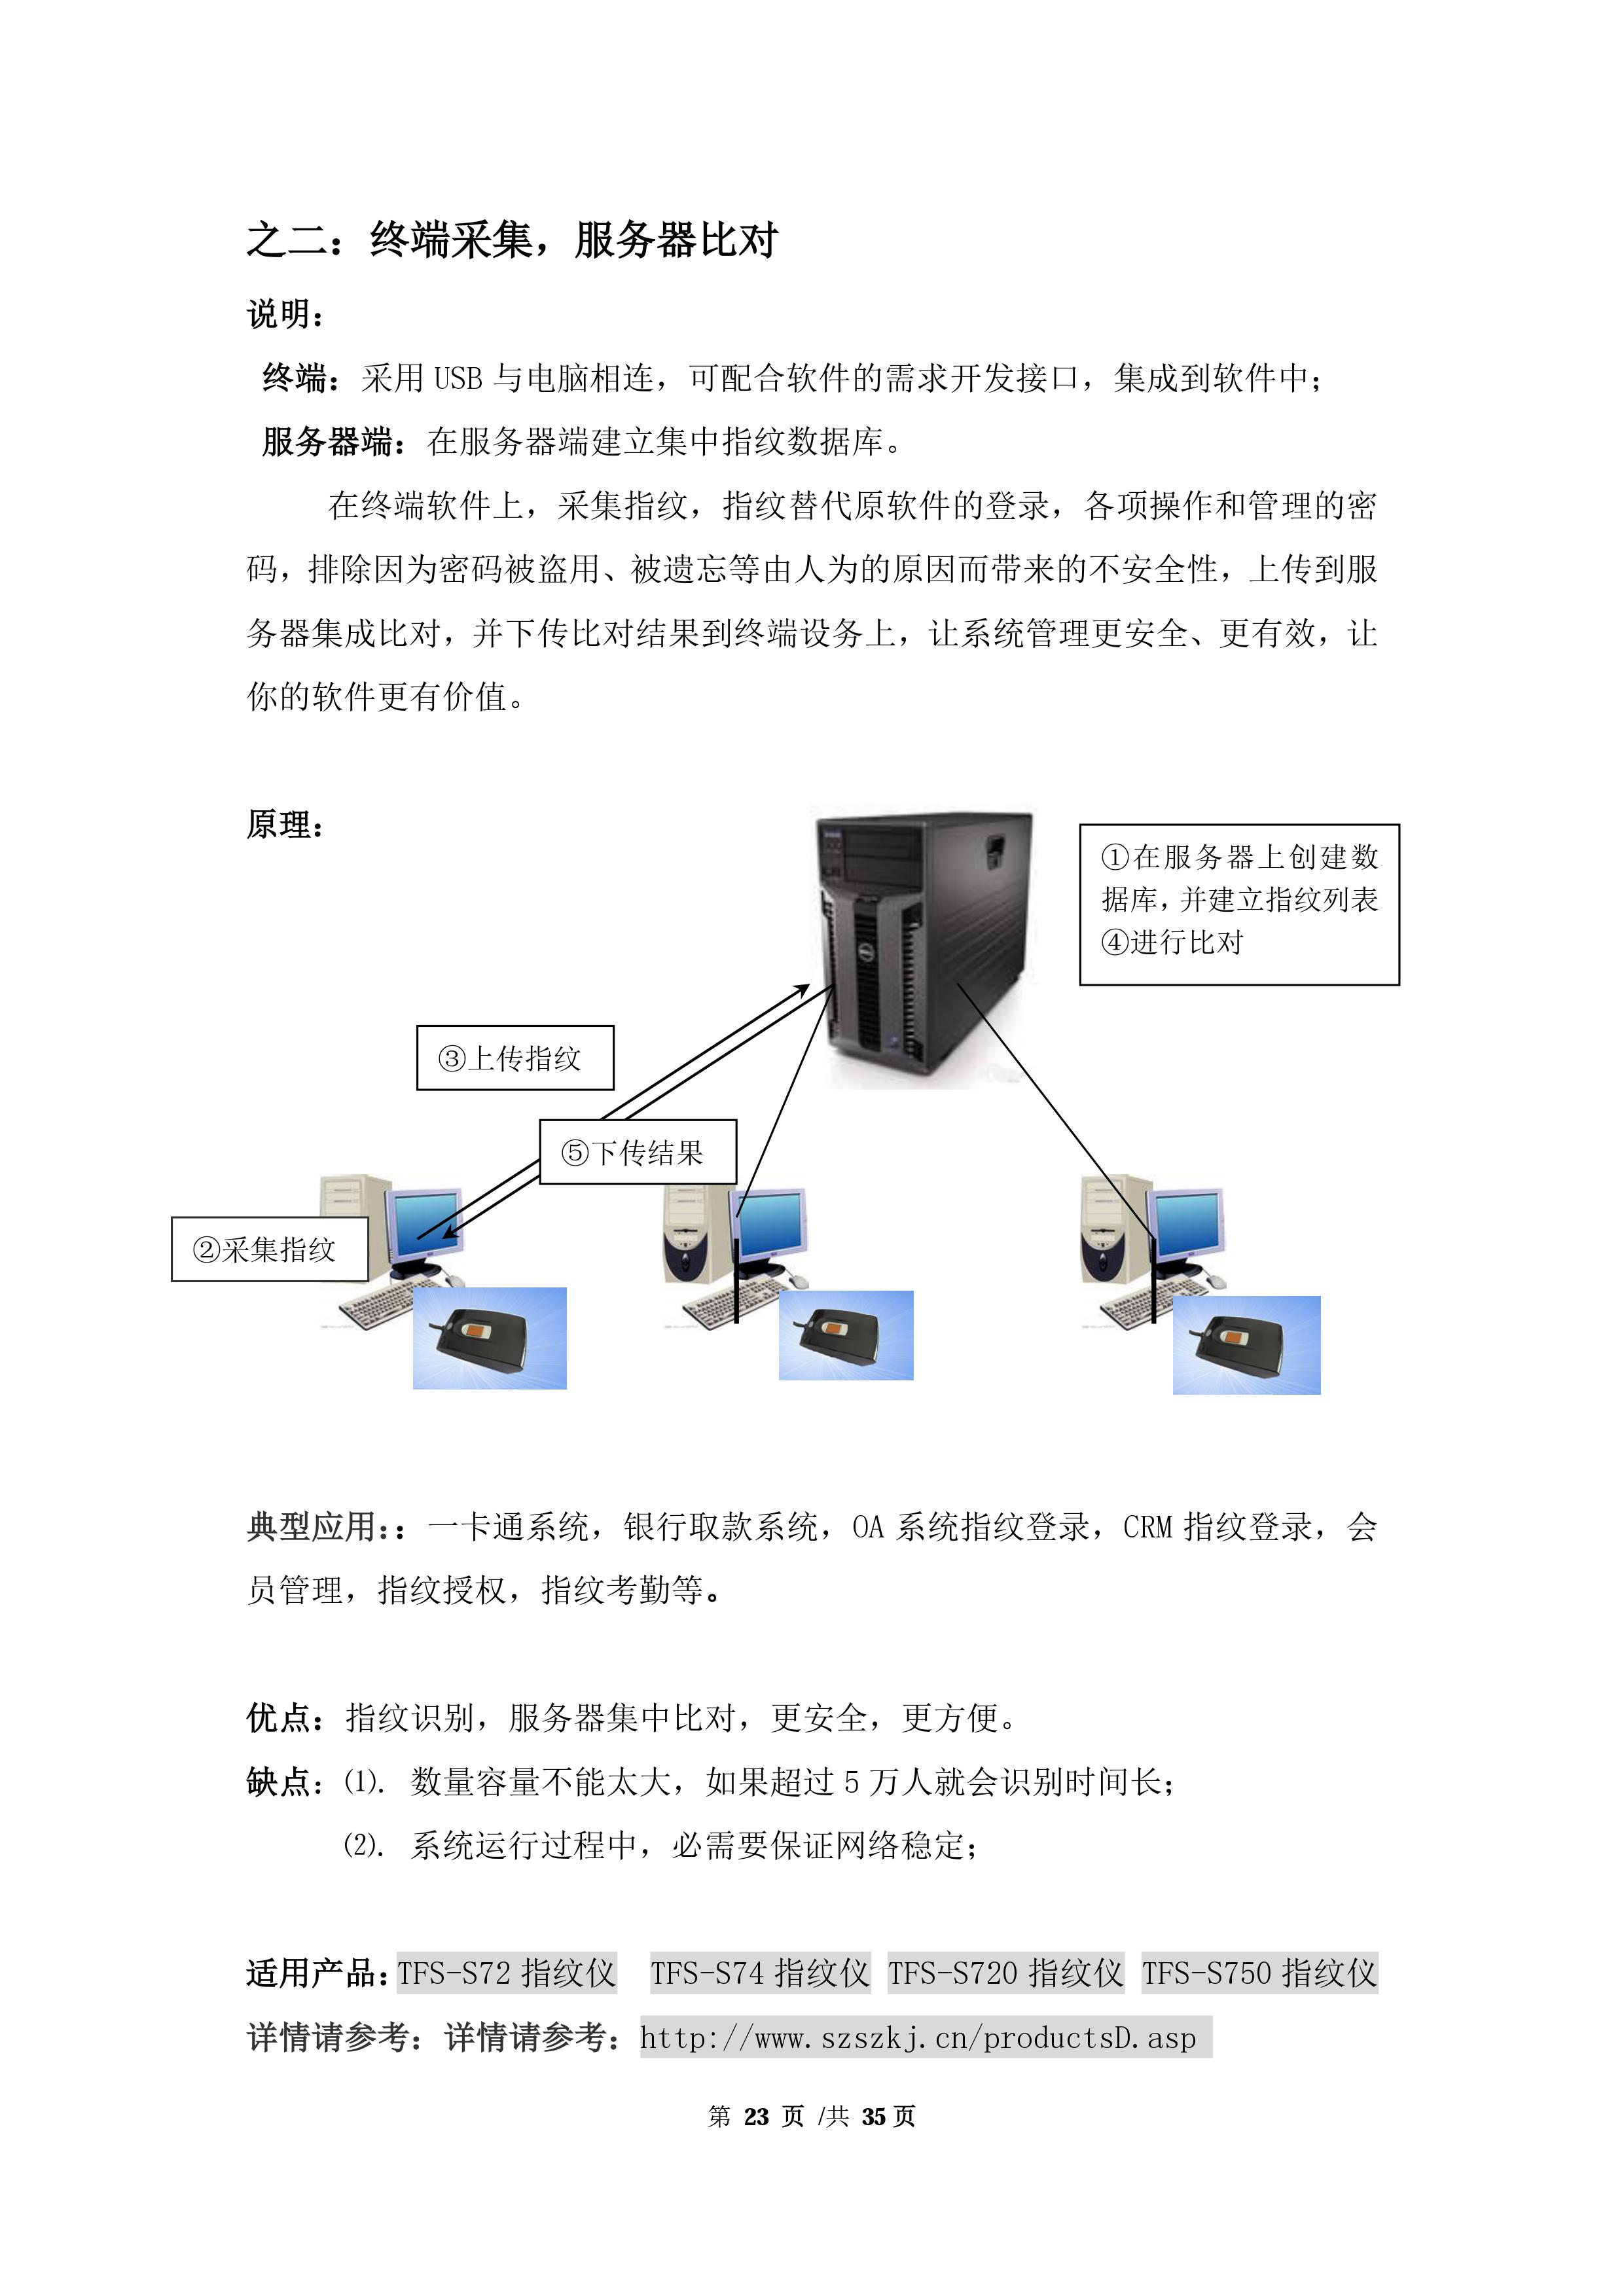 二次开发指纹开发芯片_光学指纹锁套件-深圳市十指科技有限公司